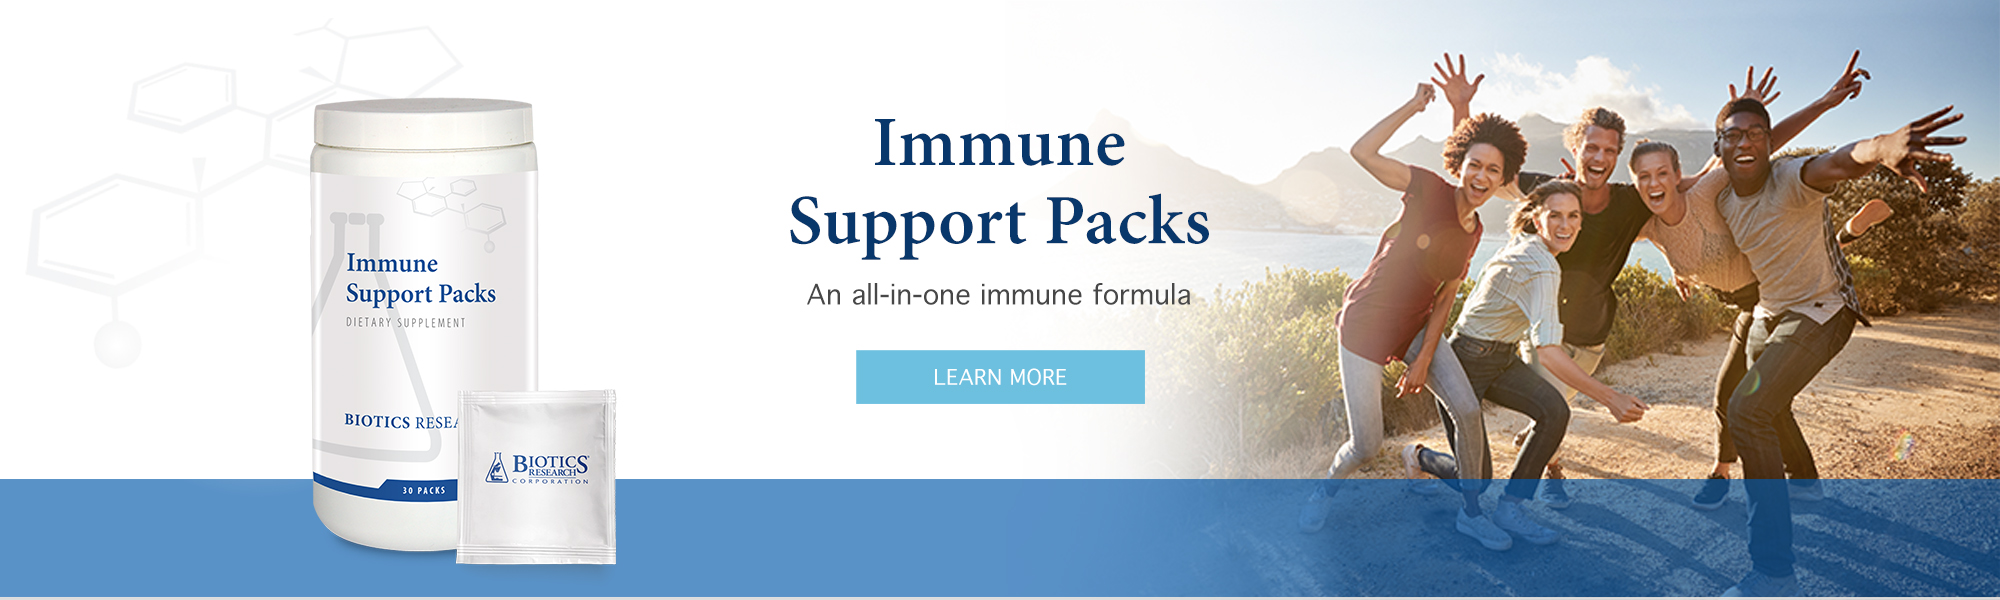 ImmuneSupportPacks_Banner